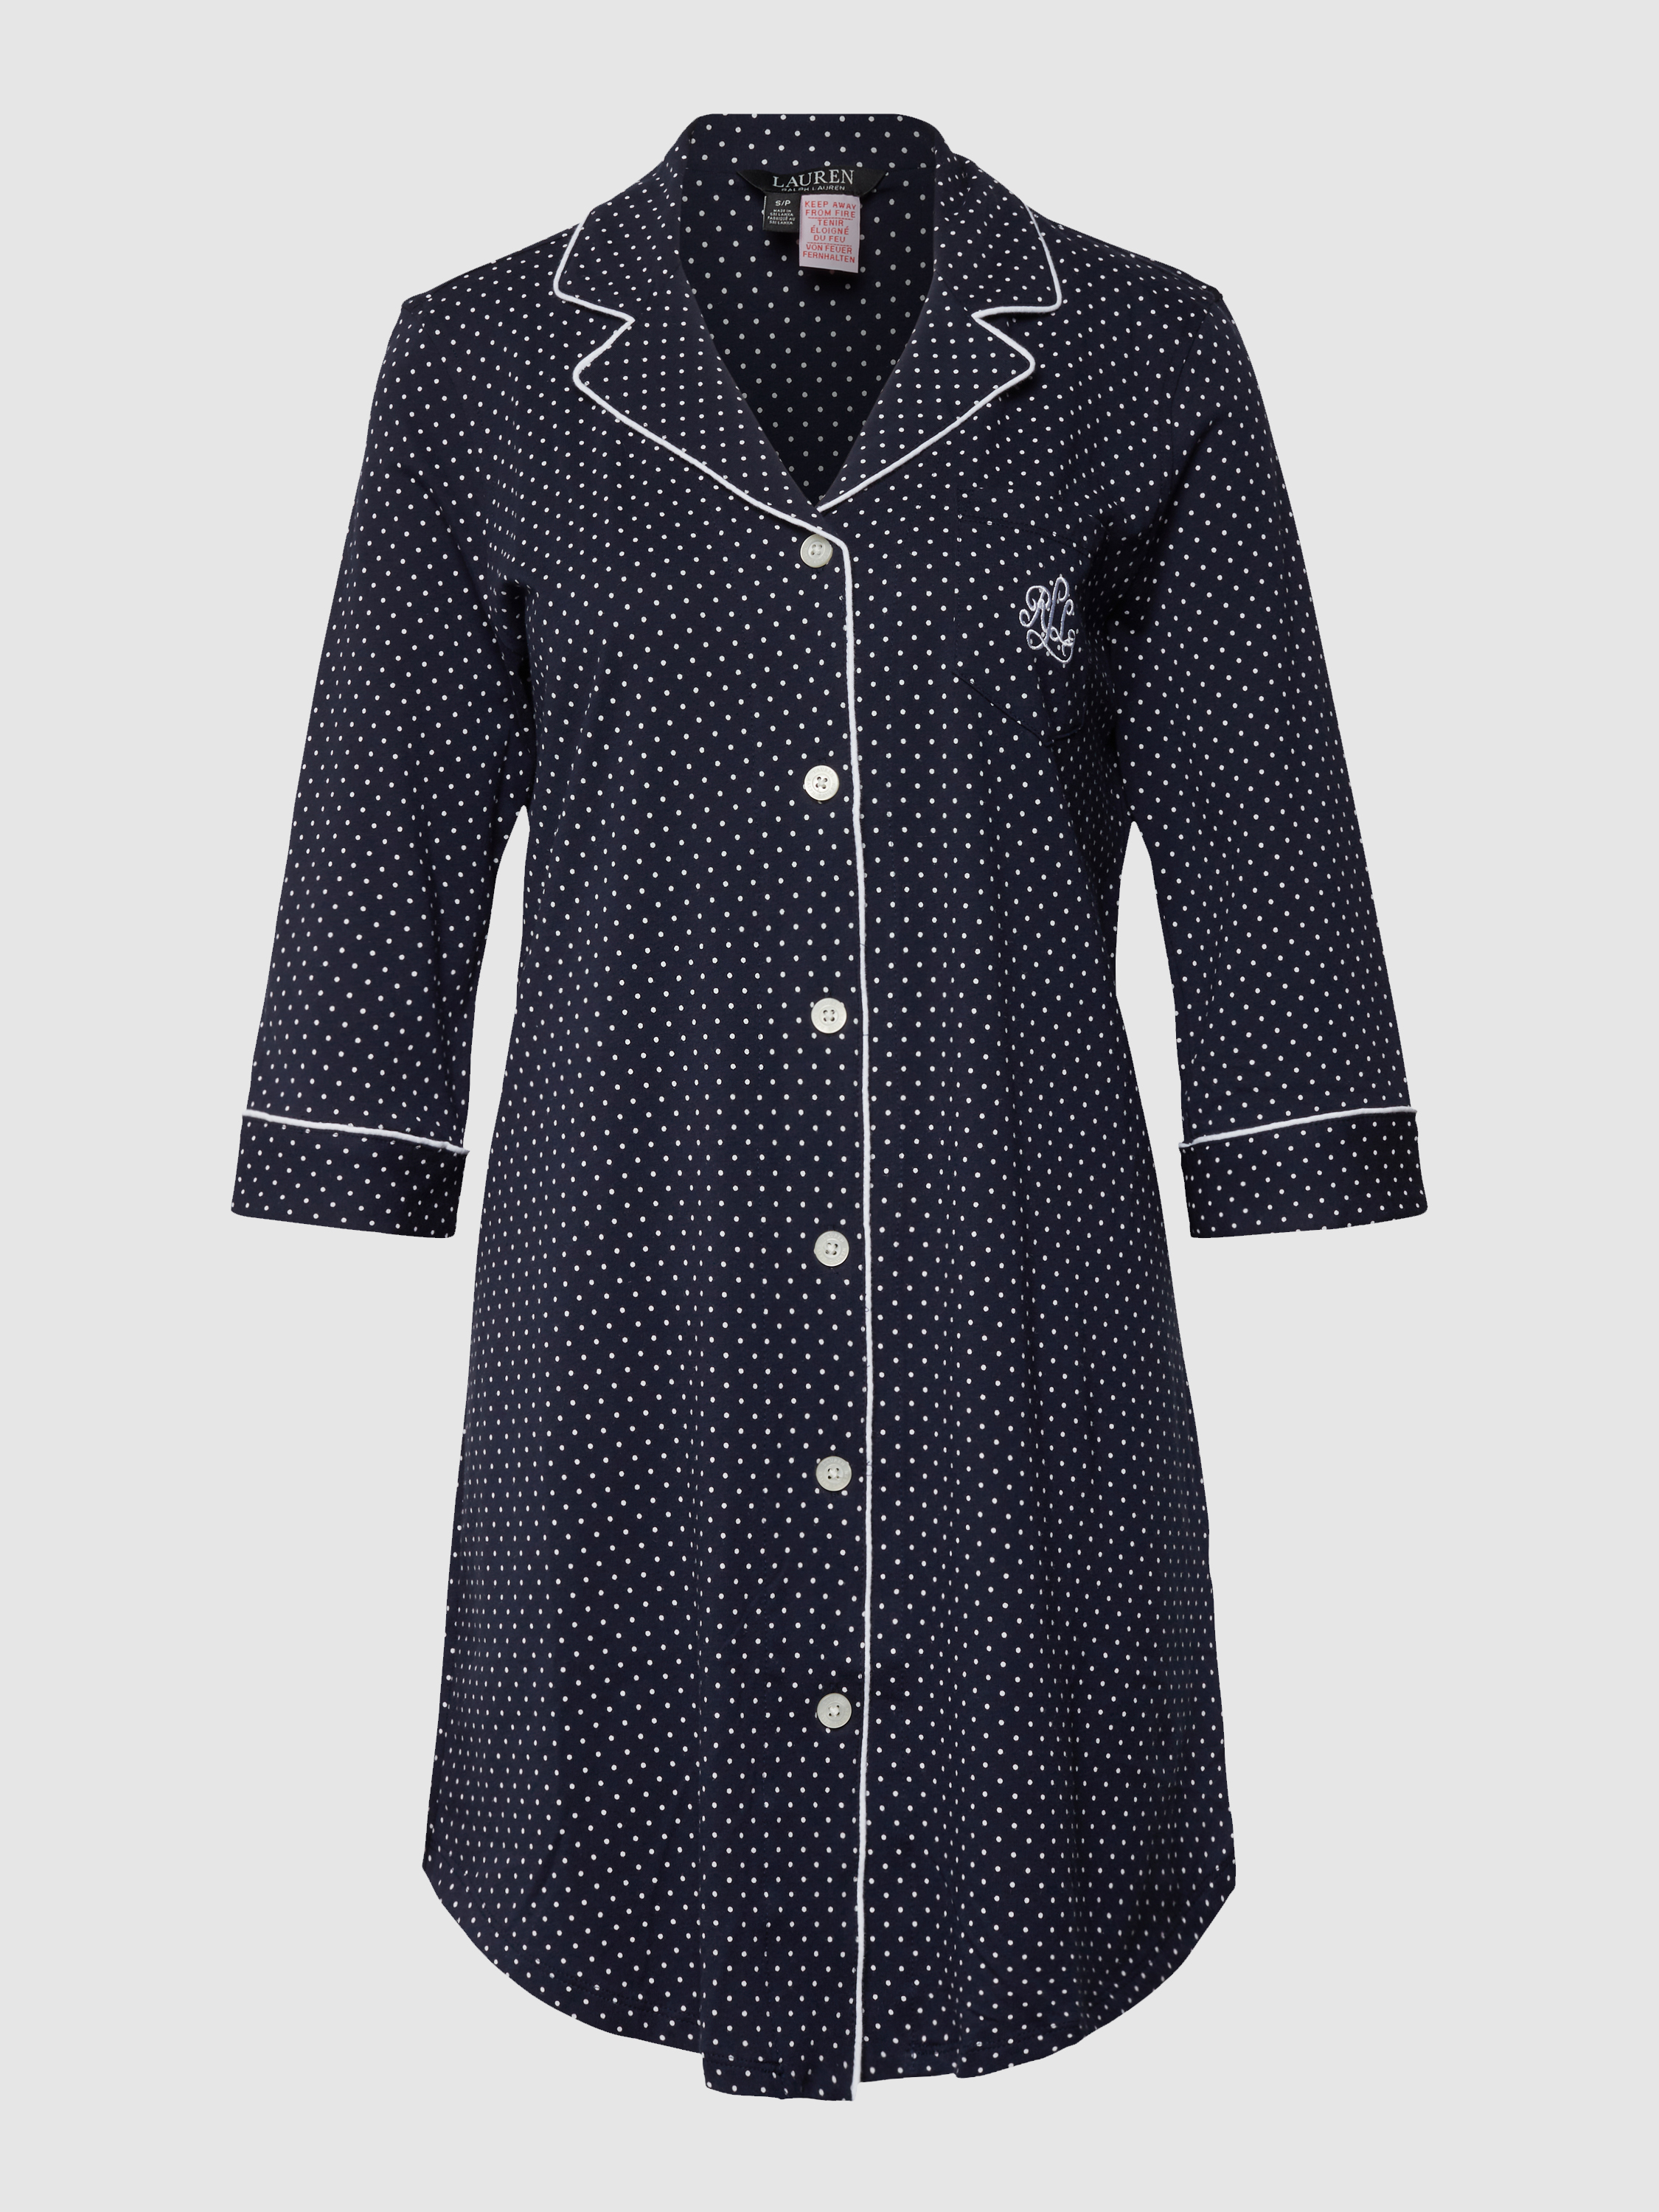 Рубашка домашняя женская Ralph Lauren 1448758 синяя XS (доставка из-за рубежа)